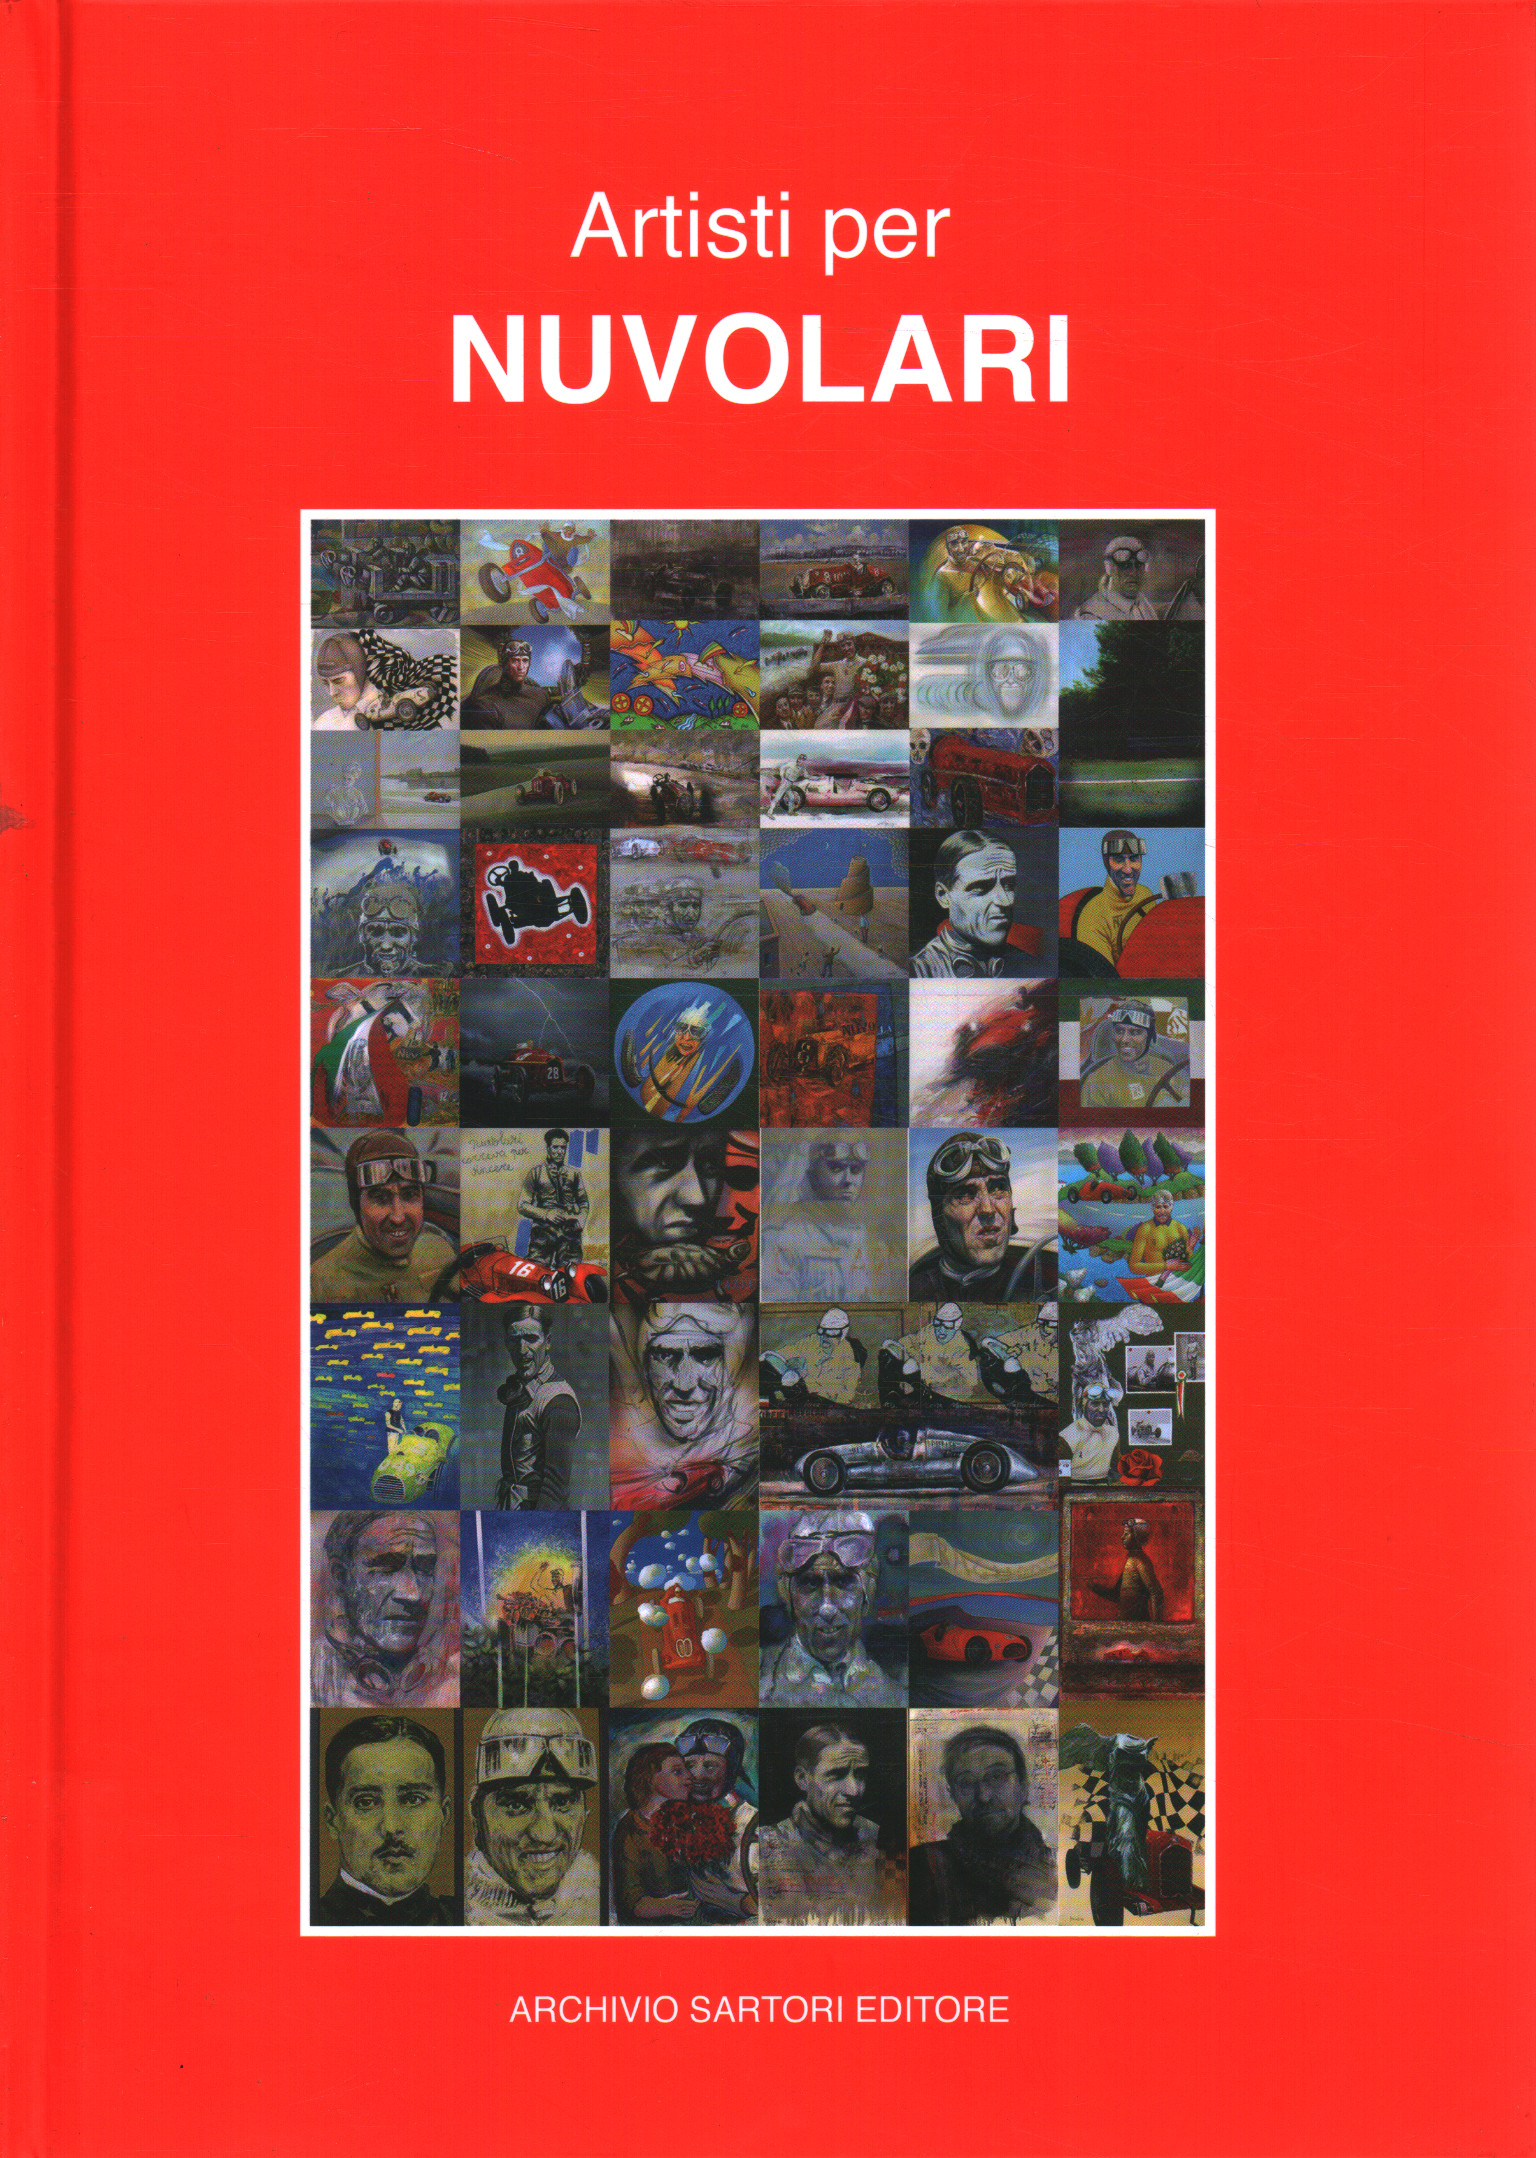 Artistes pour Nuvolari